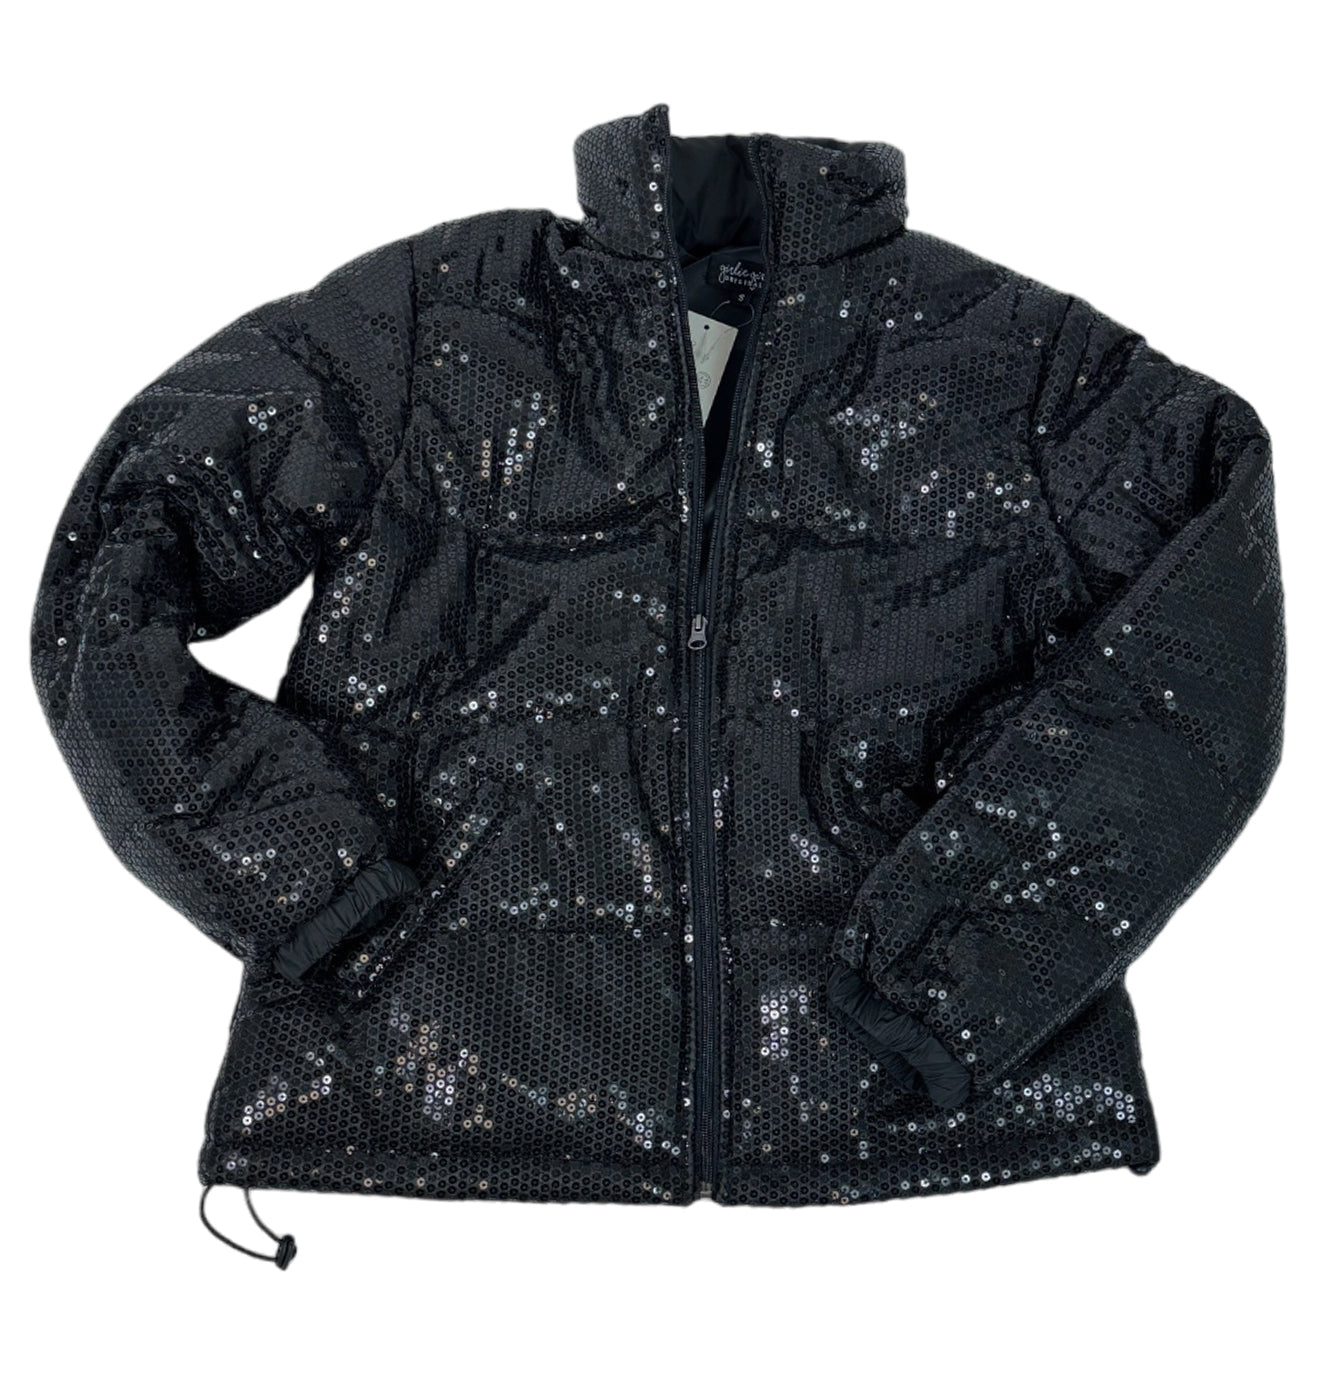 SQ-1999 Black Sequin Zip Up Jacket